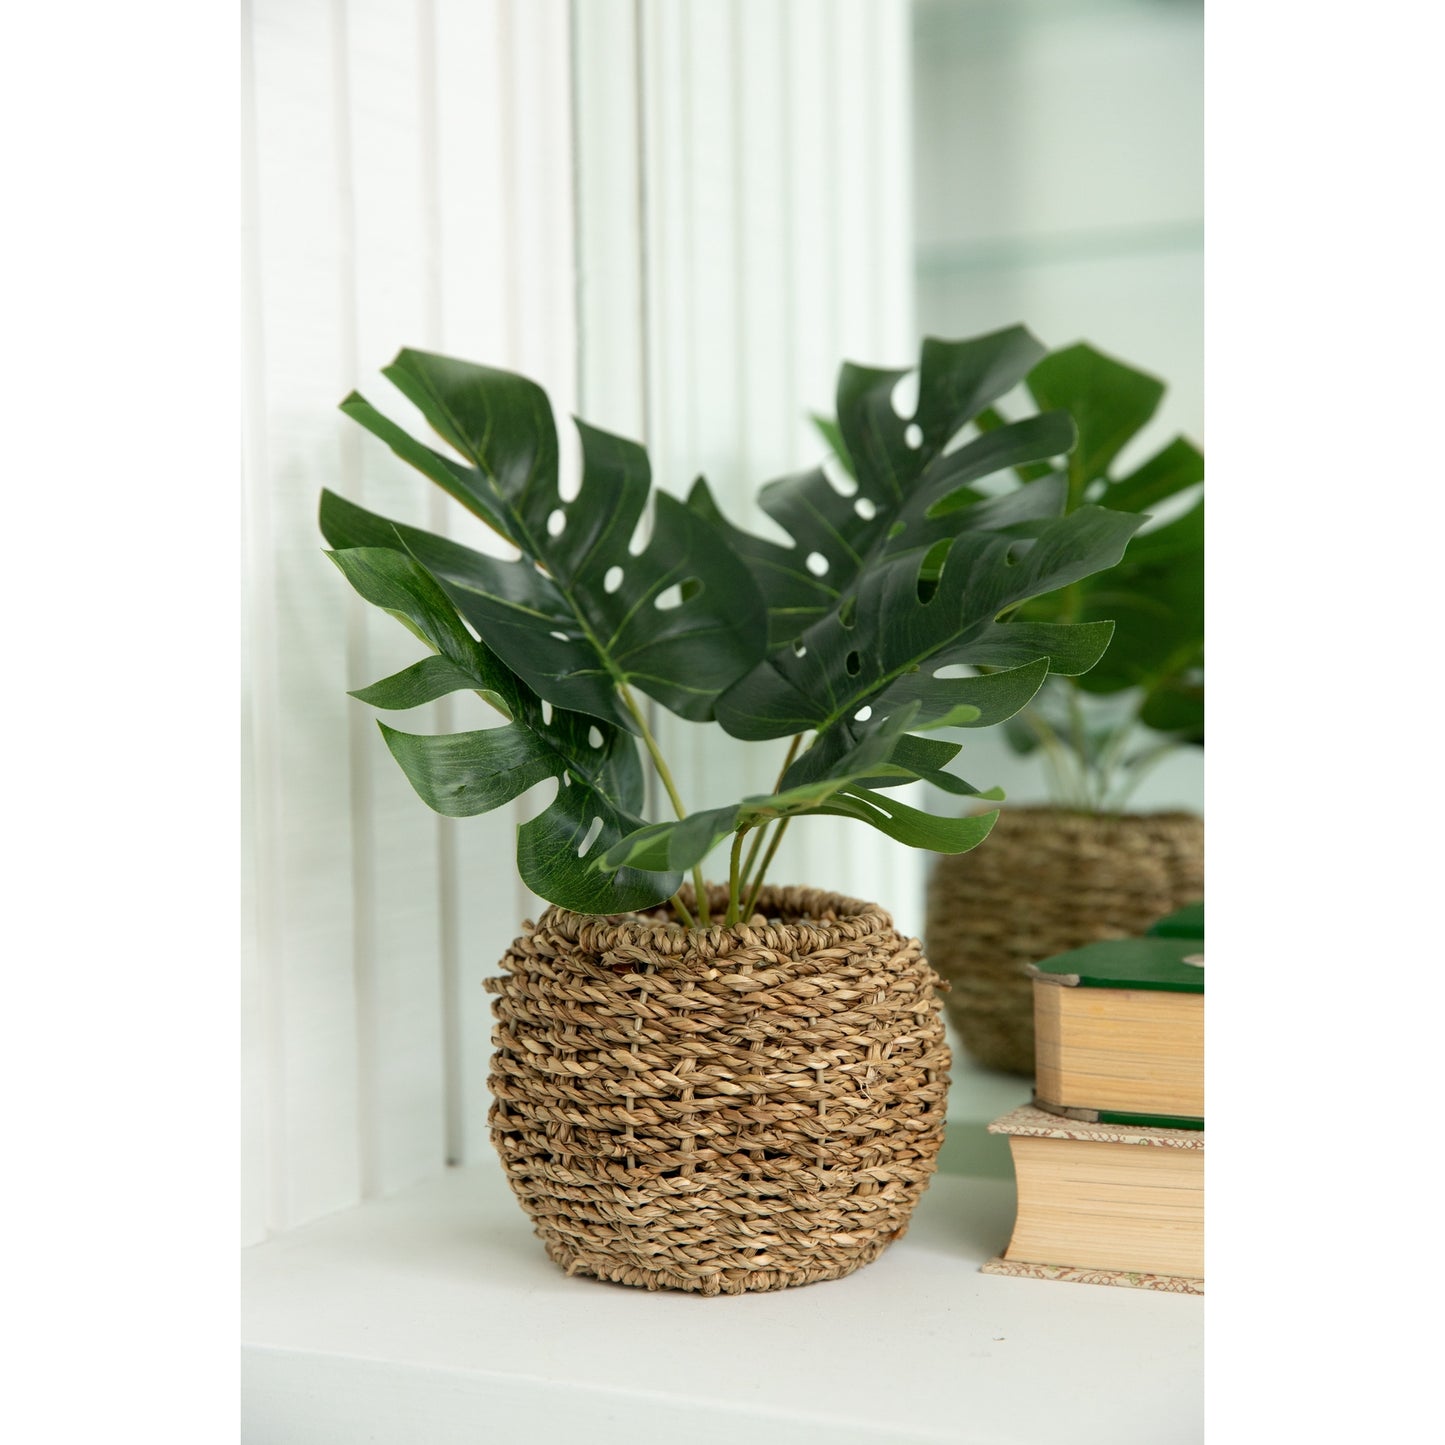 Split Leaf Plant 6" Basket